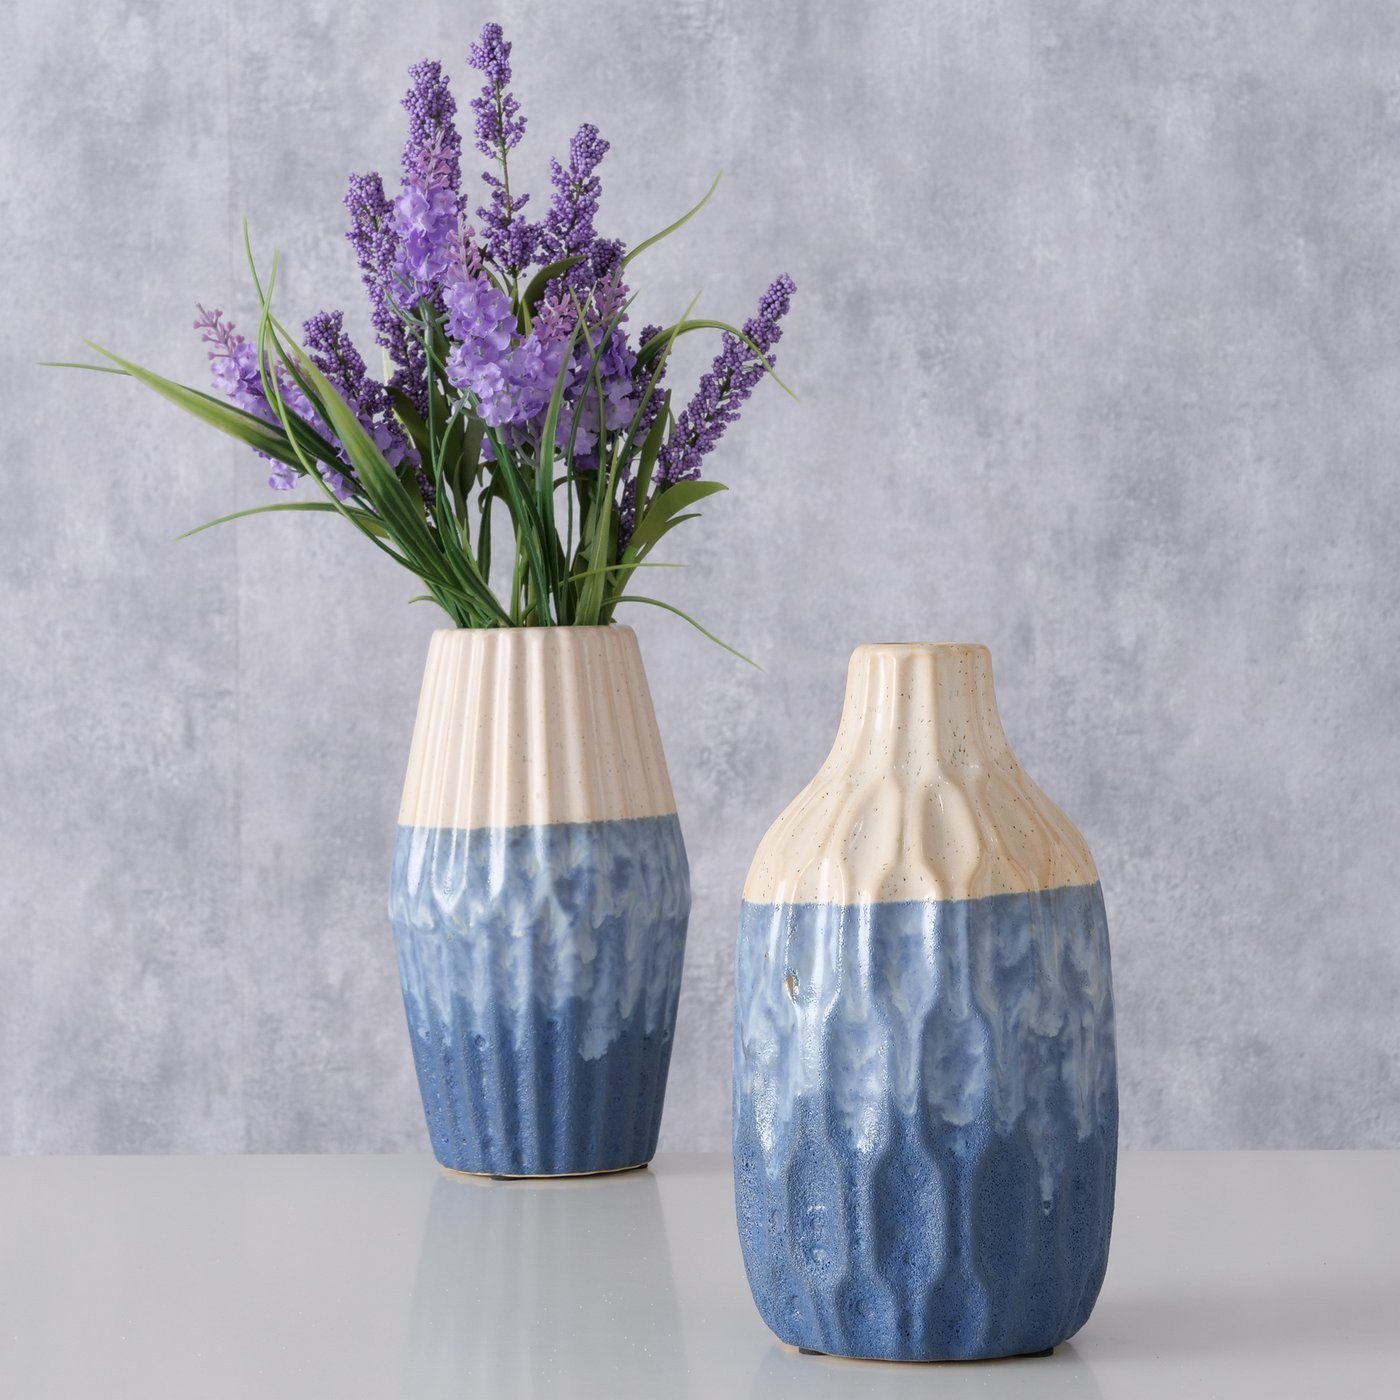 BOLTZE Dekovase 2er Set "Inma" aus Keramik in blau/beige, Vase Blumenvase